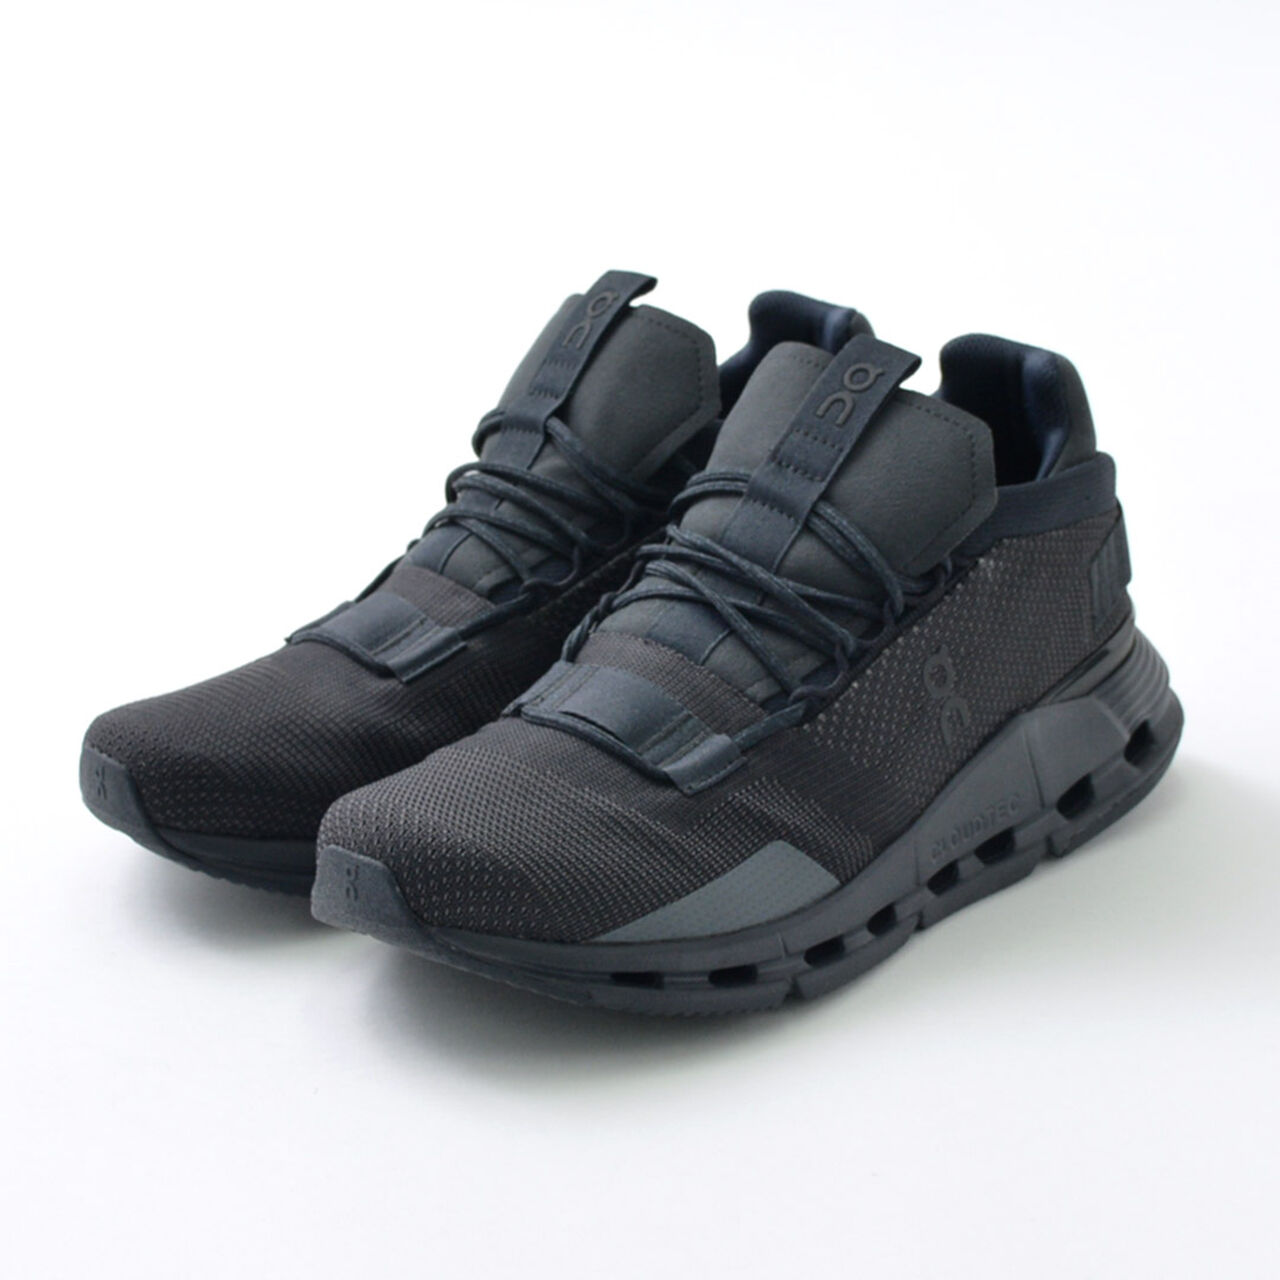 Cloud Nova Sneaker,Black_Eclipse, large image number 0